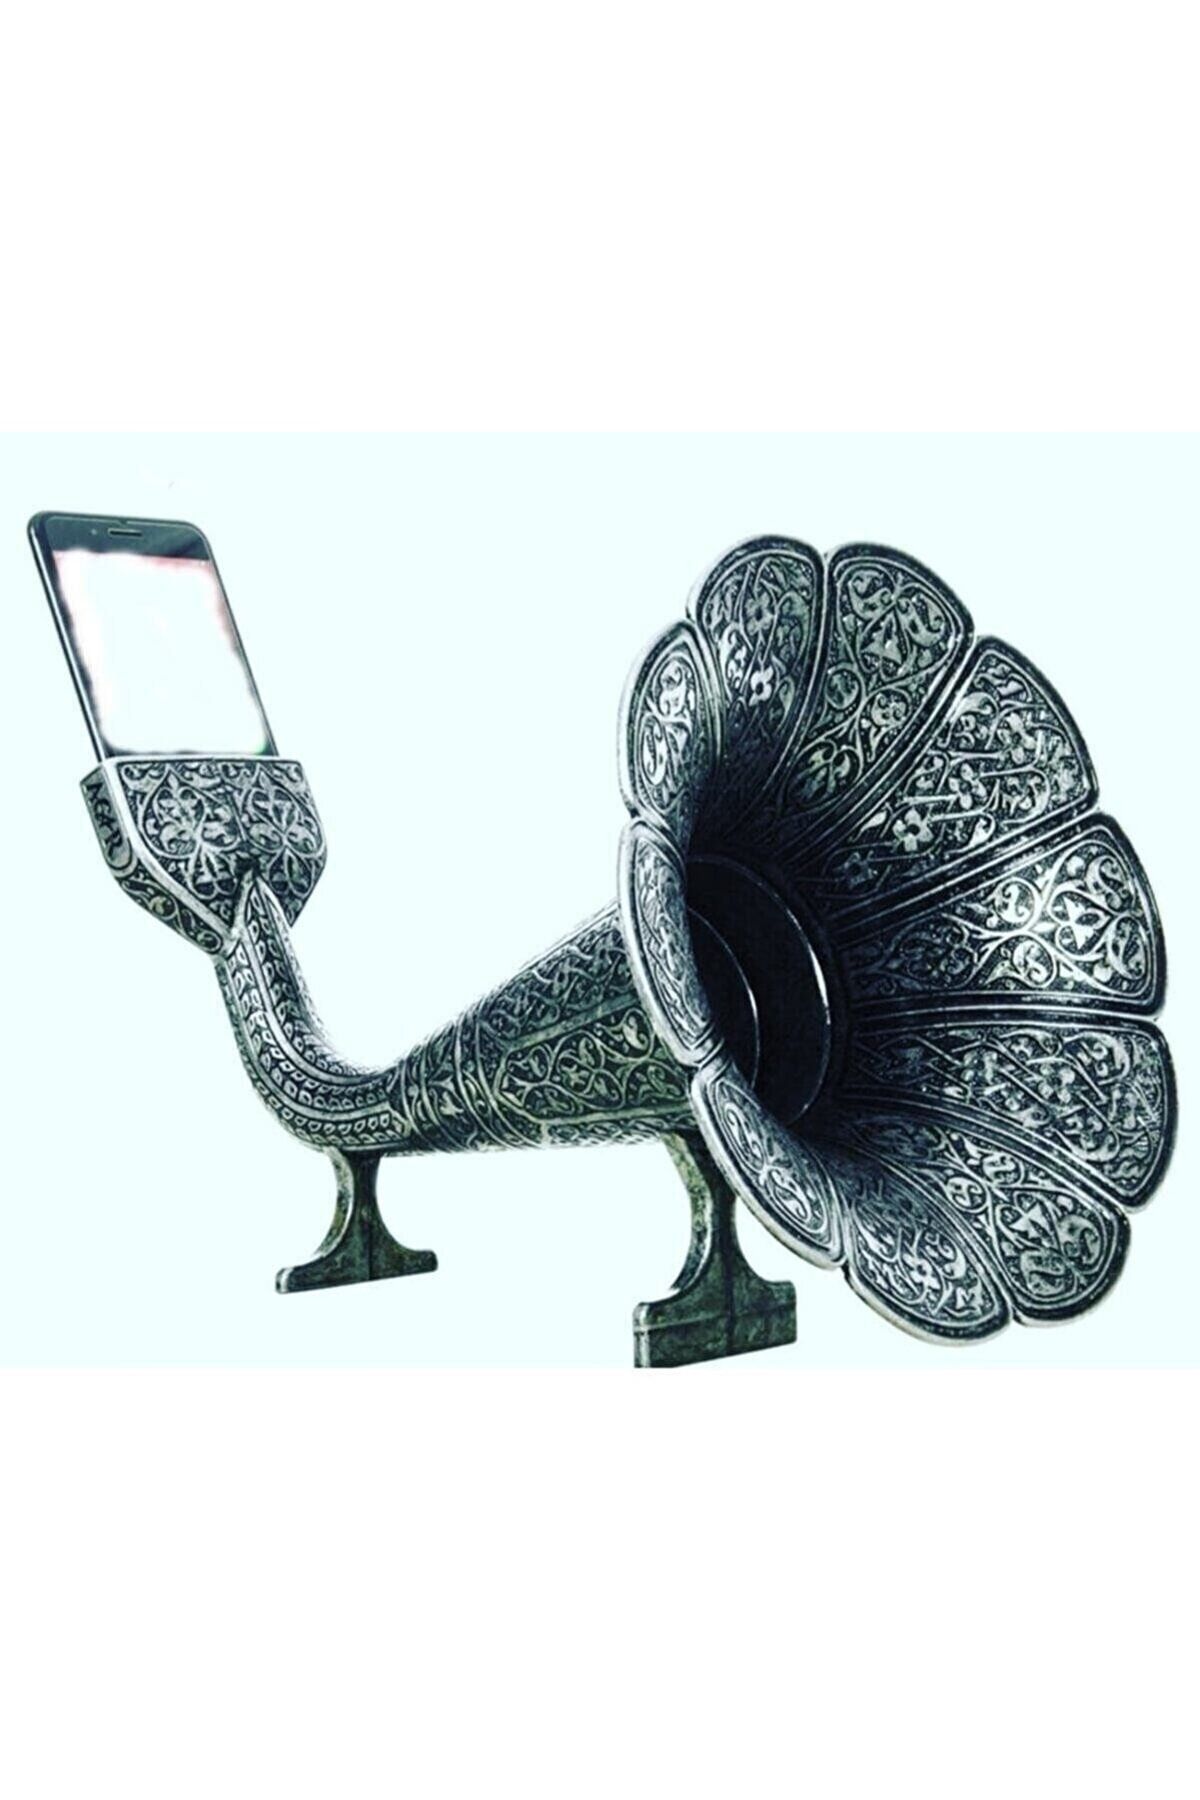 Kelepir Fırsatlar Eskitme Gümüş Renkli Osmanlı Tarzı Süslemeli Cep Telefonunu Gramofona Çeviren Huni